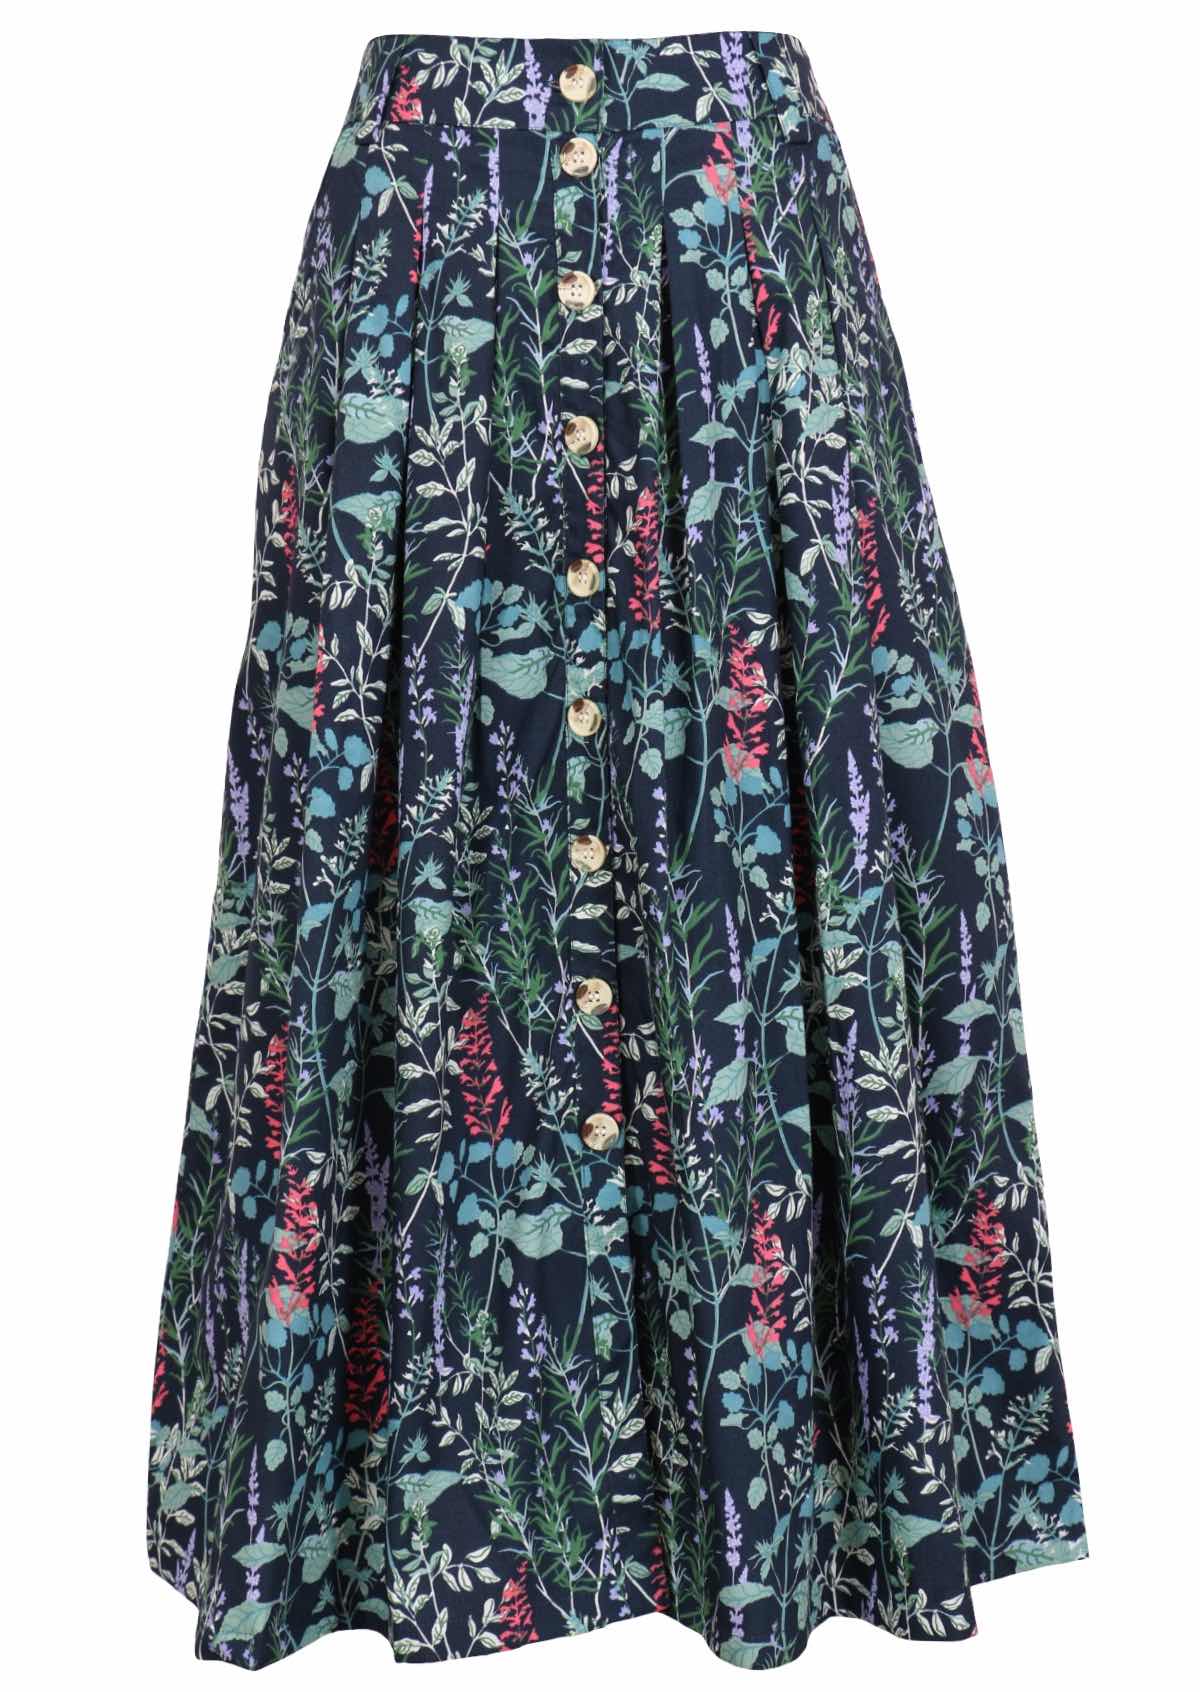 Gorgeous floral print on dark teal base cotton button through skirt